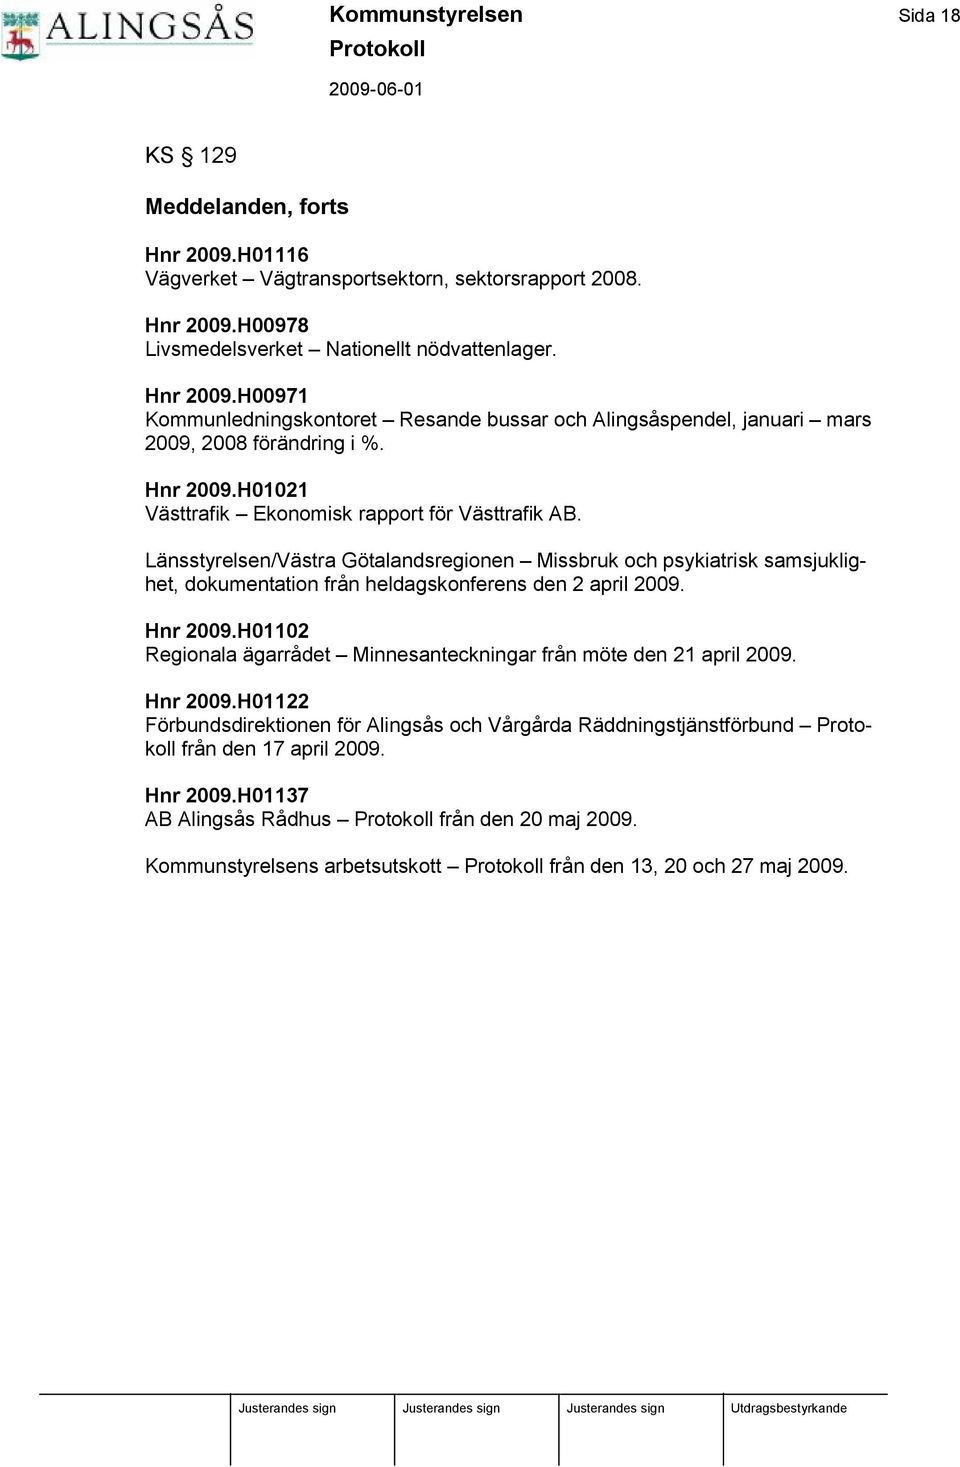 Hnr 2009.H01102 Regionala ä garrådet Minnesanteckningar från möte den 21 april 2009. Hnr 2009.H01122 Förbundsdirektionen för Alingsås och Vårgårda Rä ddningstjä nstförbund från den 17 april 2009.